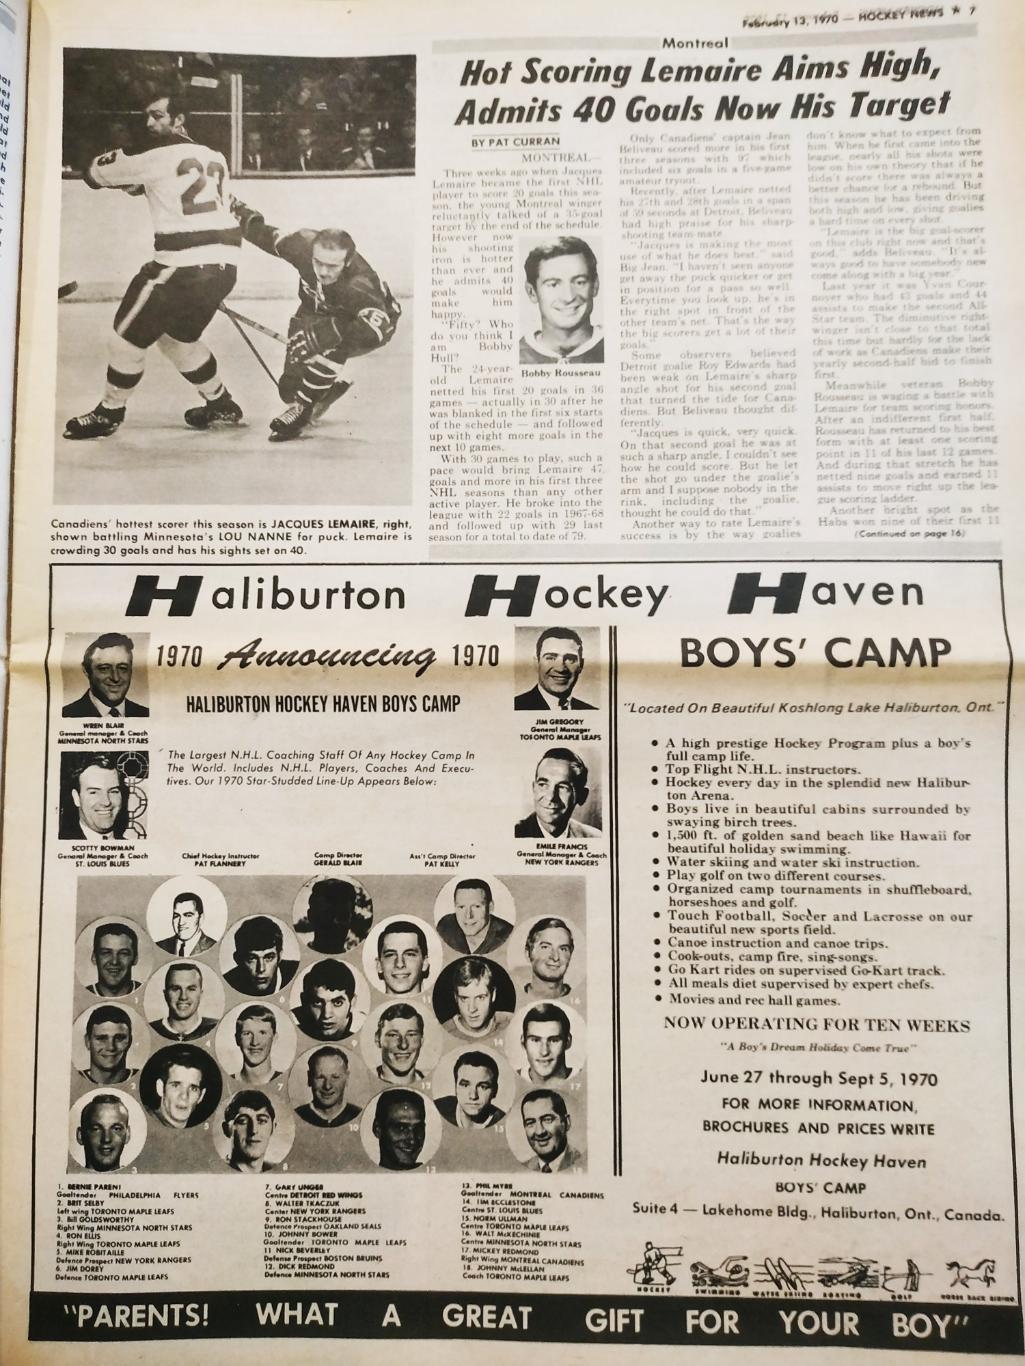 ХОККЕЙ ЖУРНАЛ ЕЖЕНЕДЕЛЬНИК НХЛ НОВОСТИ ХОККЕЯ FEB.13 1970 NHL THE HOCKEY NEWS 3